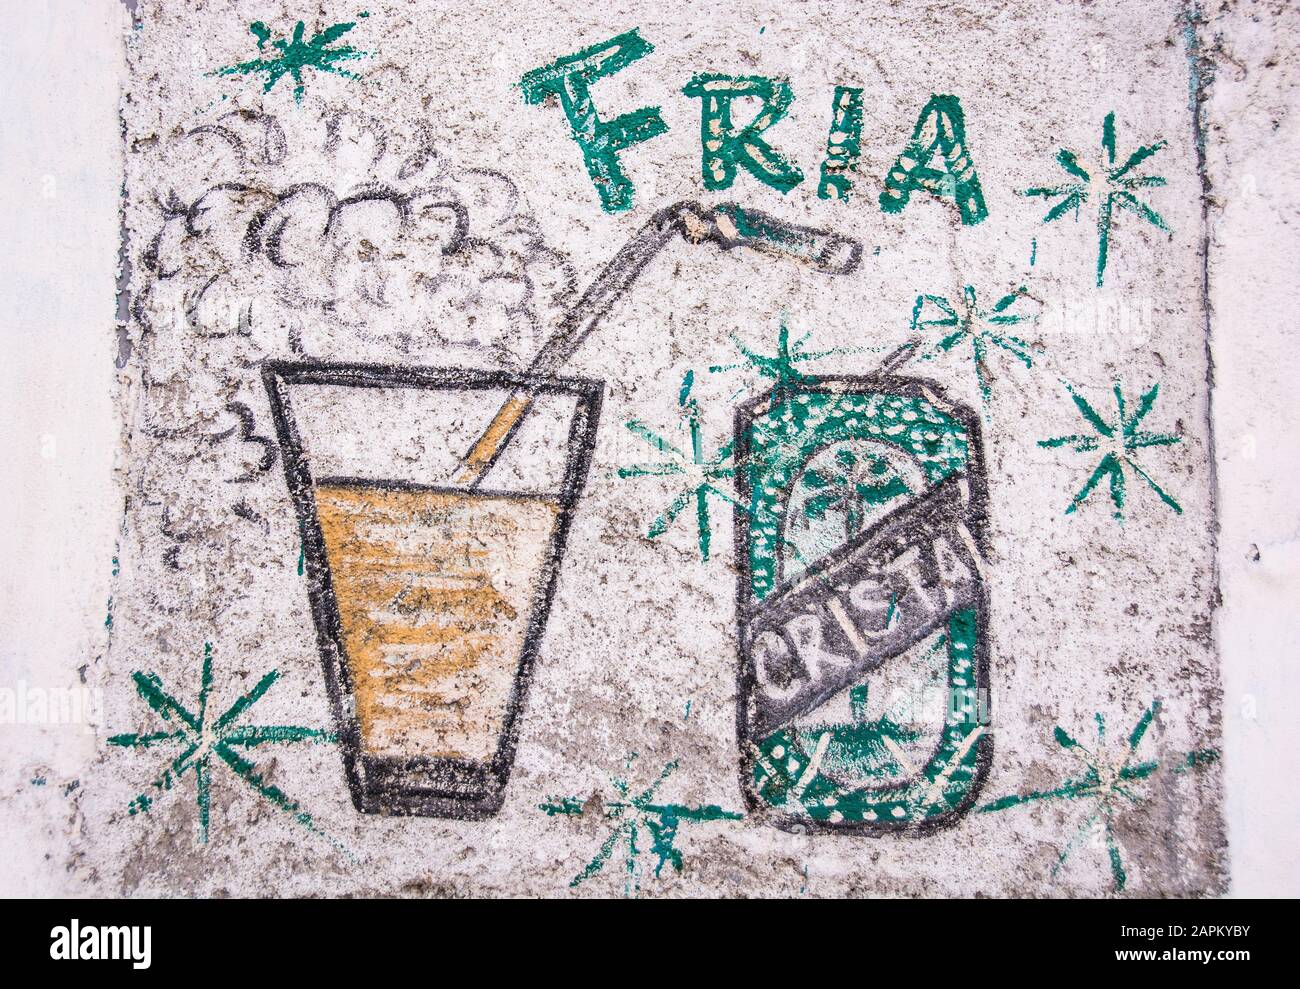 Un dessin amateurish utilisé pour commercialiser un bar; Santiago de Cuba, Cuba. Banque D'Images